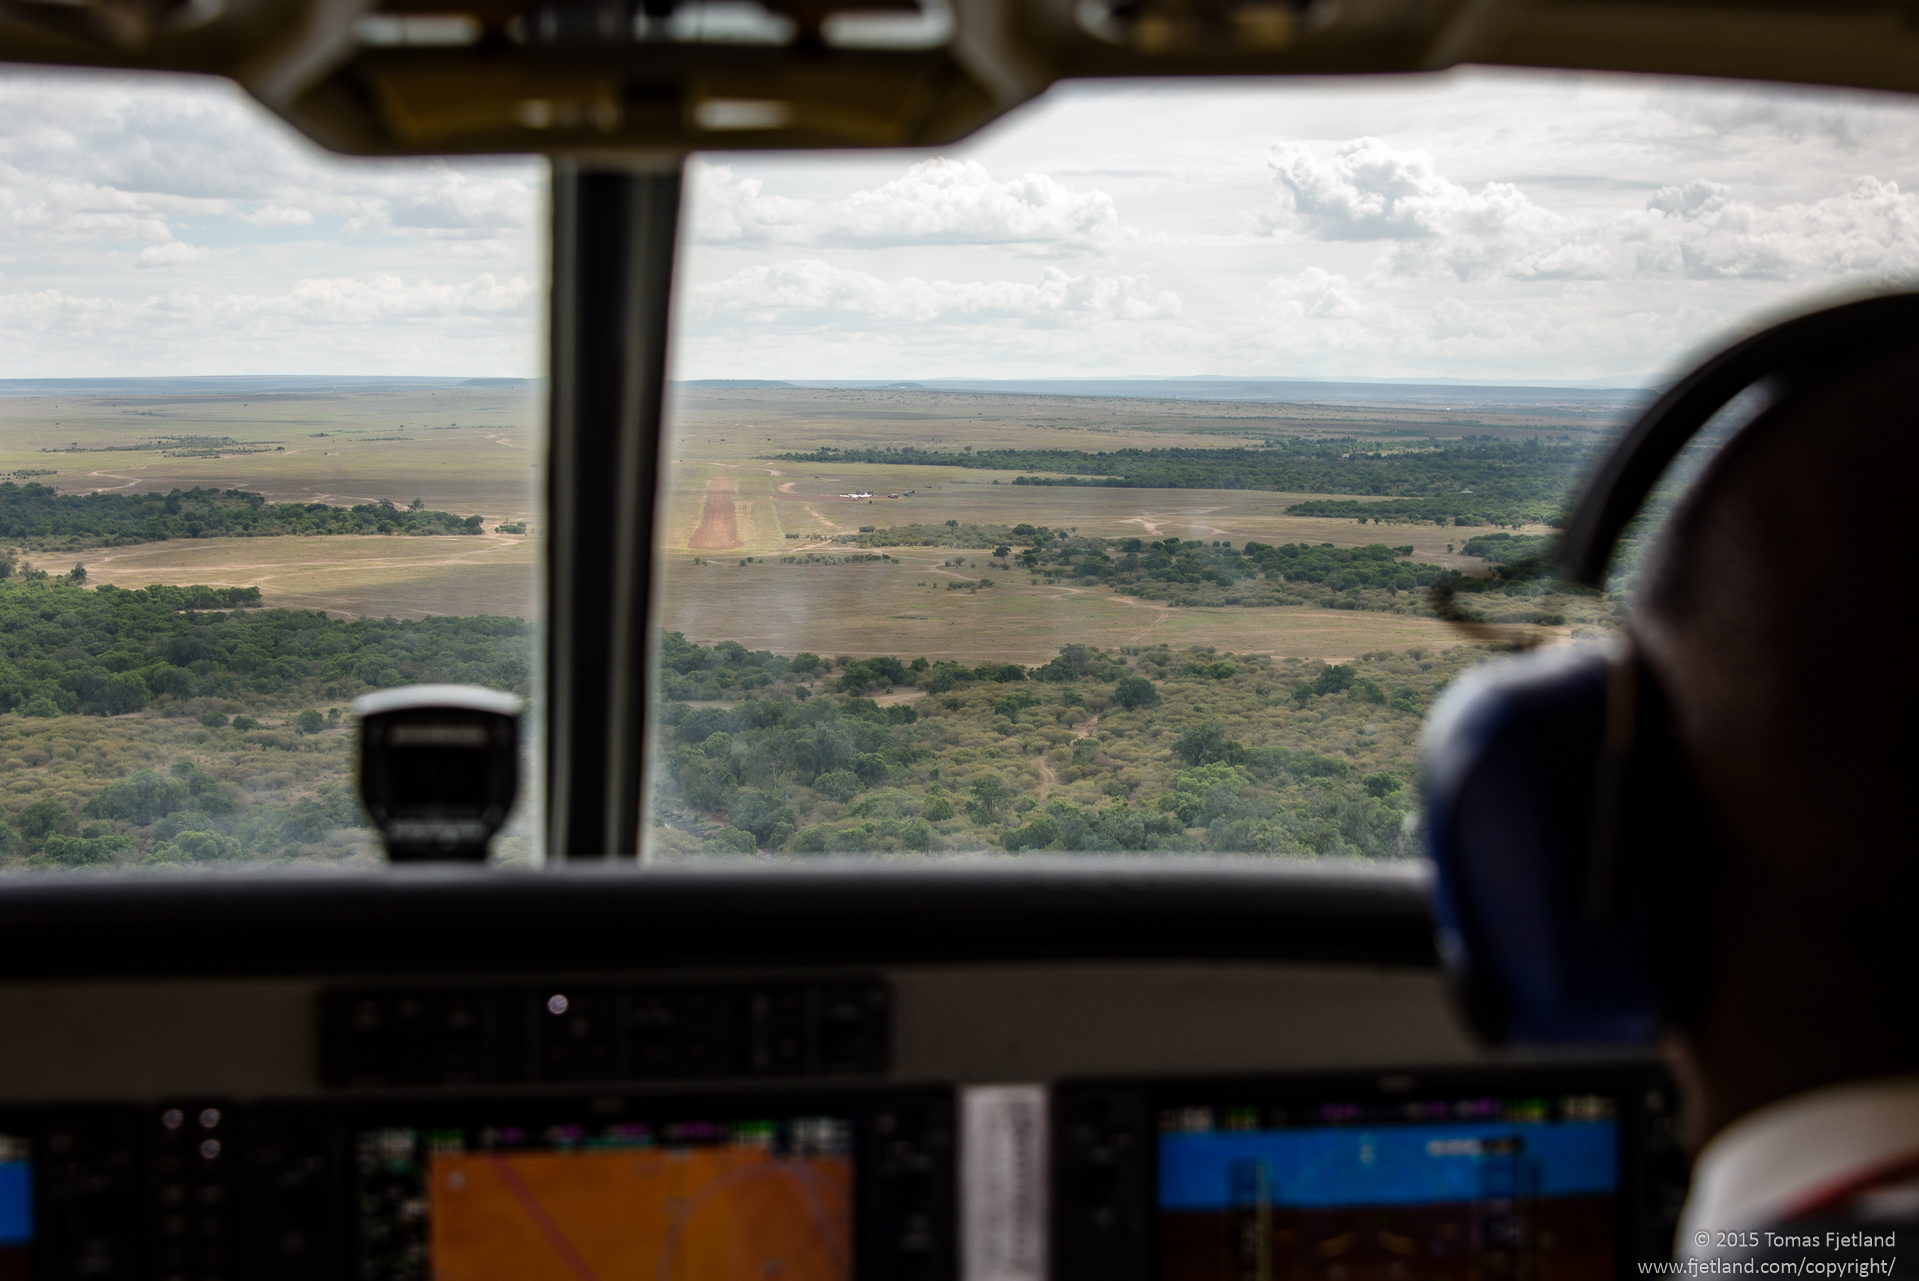 Approaching the Ol Kiombo airstrip in Maasai Mara